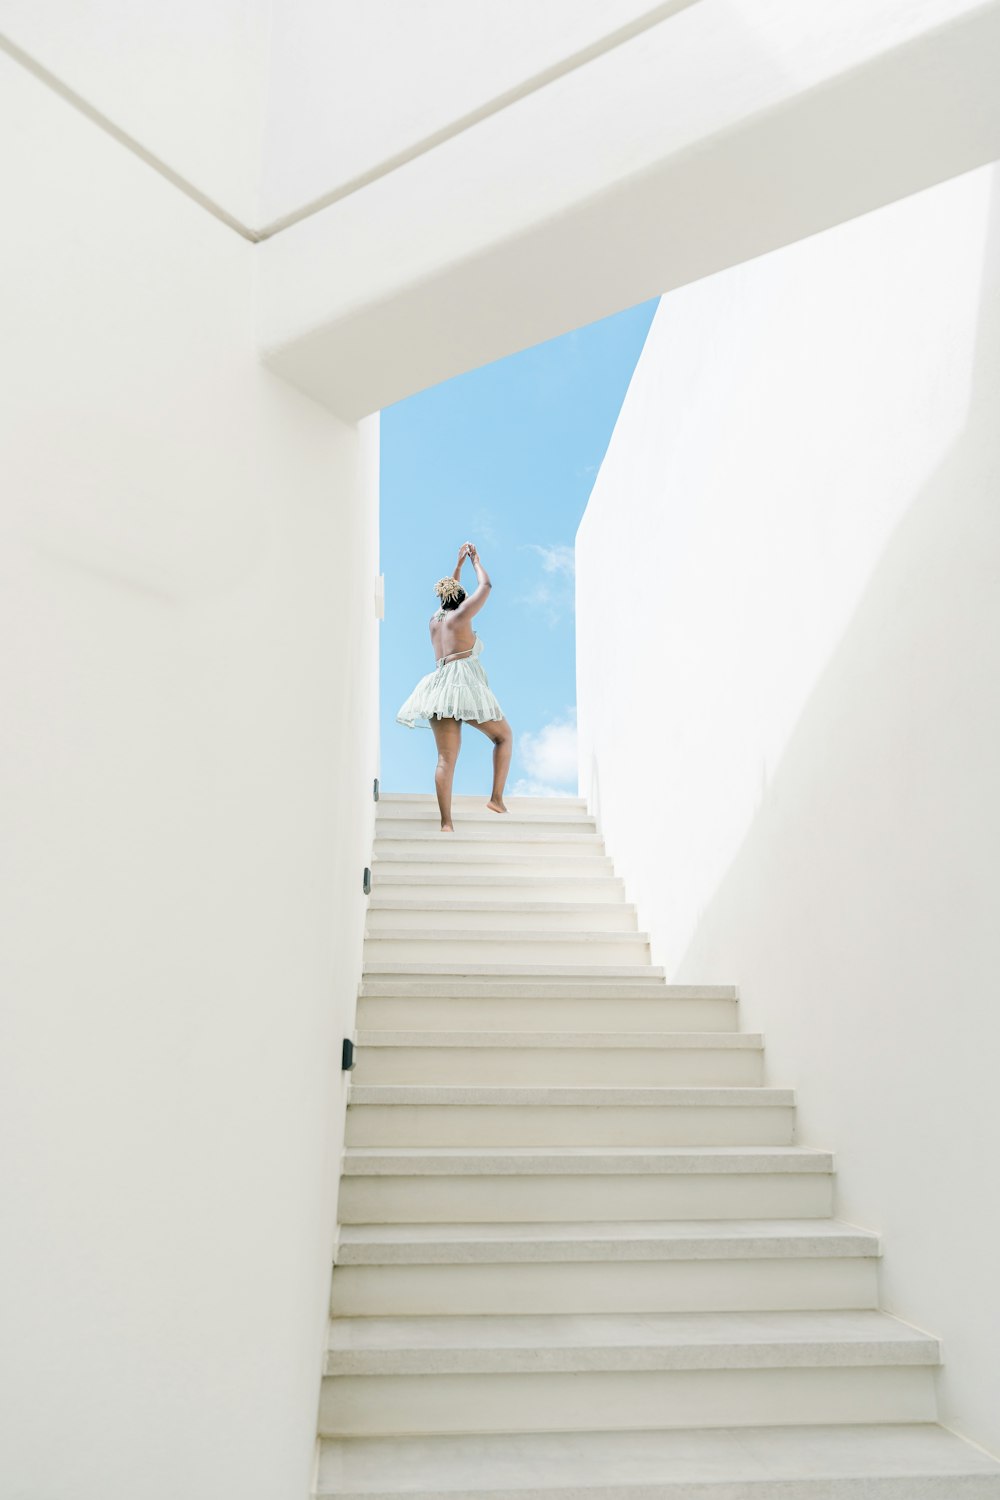 Una donna in un vestito bianco sta scendendo una rampa di scale